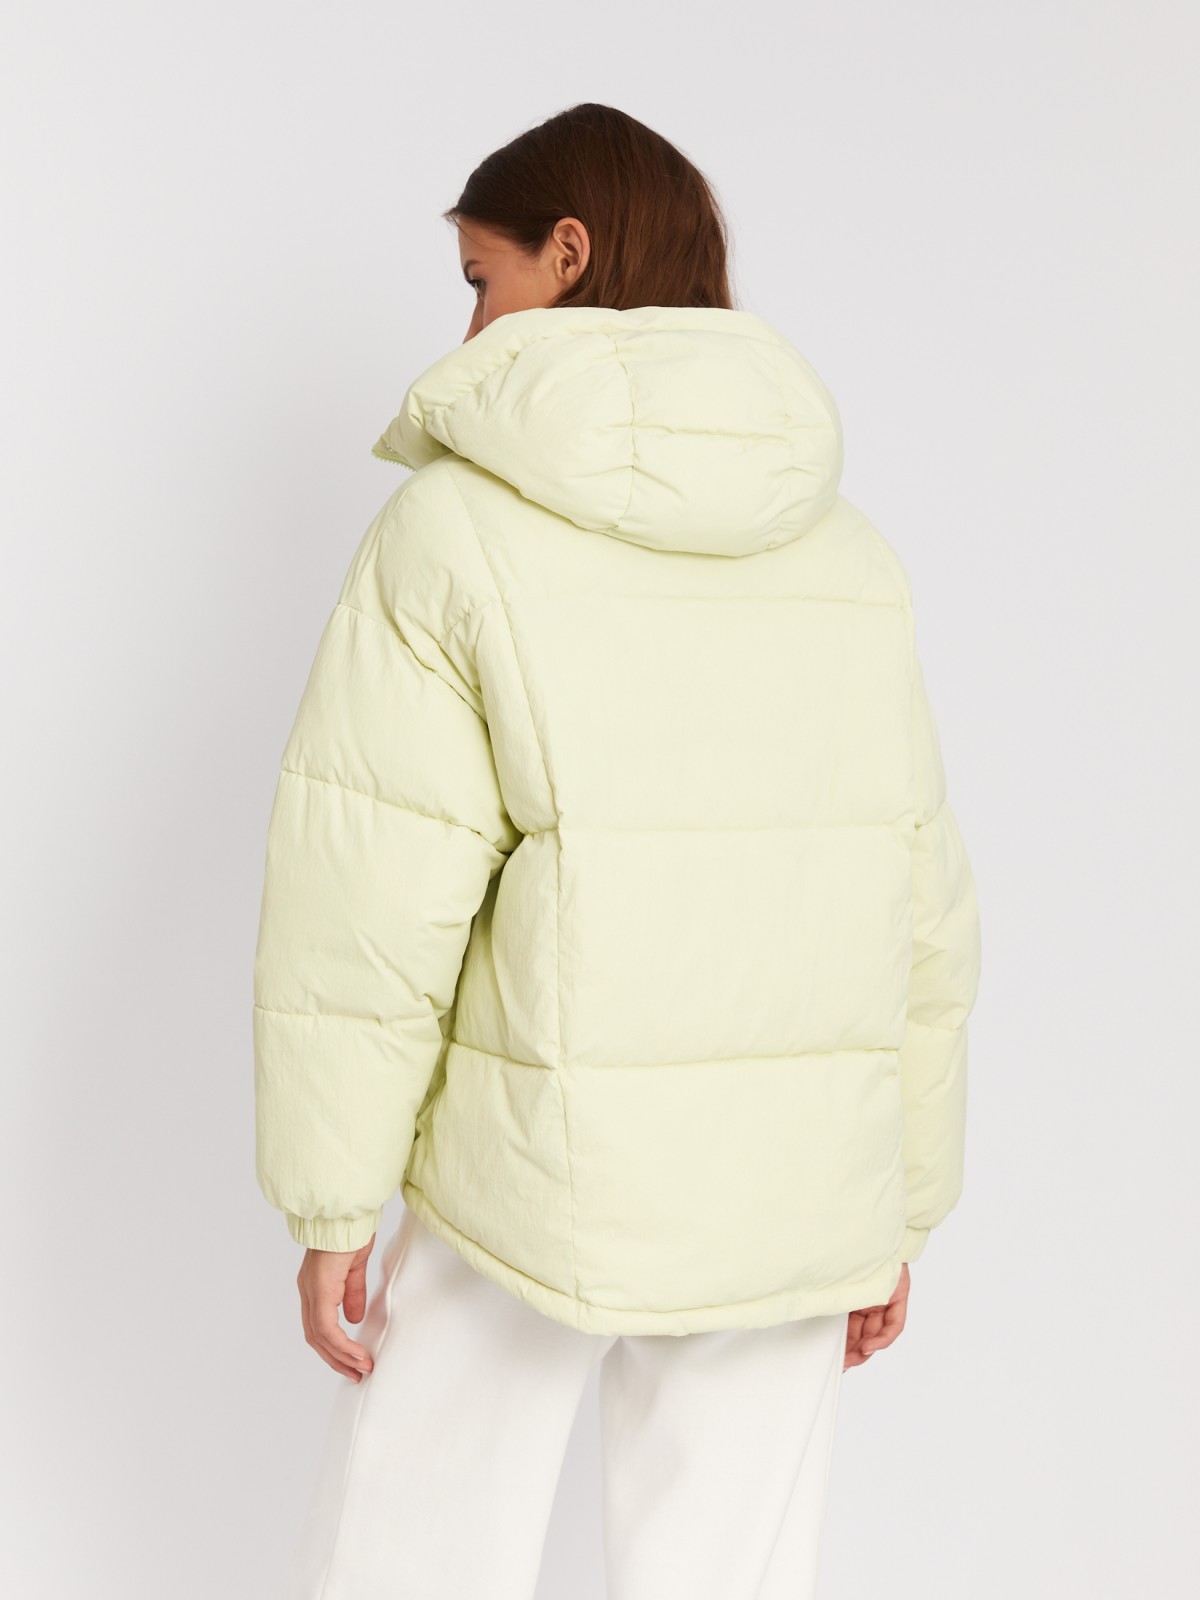 Короткая тёплая дутая куртка оверсайз силуэта с капюшоном zolla 023345102014, цвет лайм, размер XS - фото 6